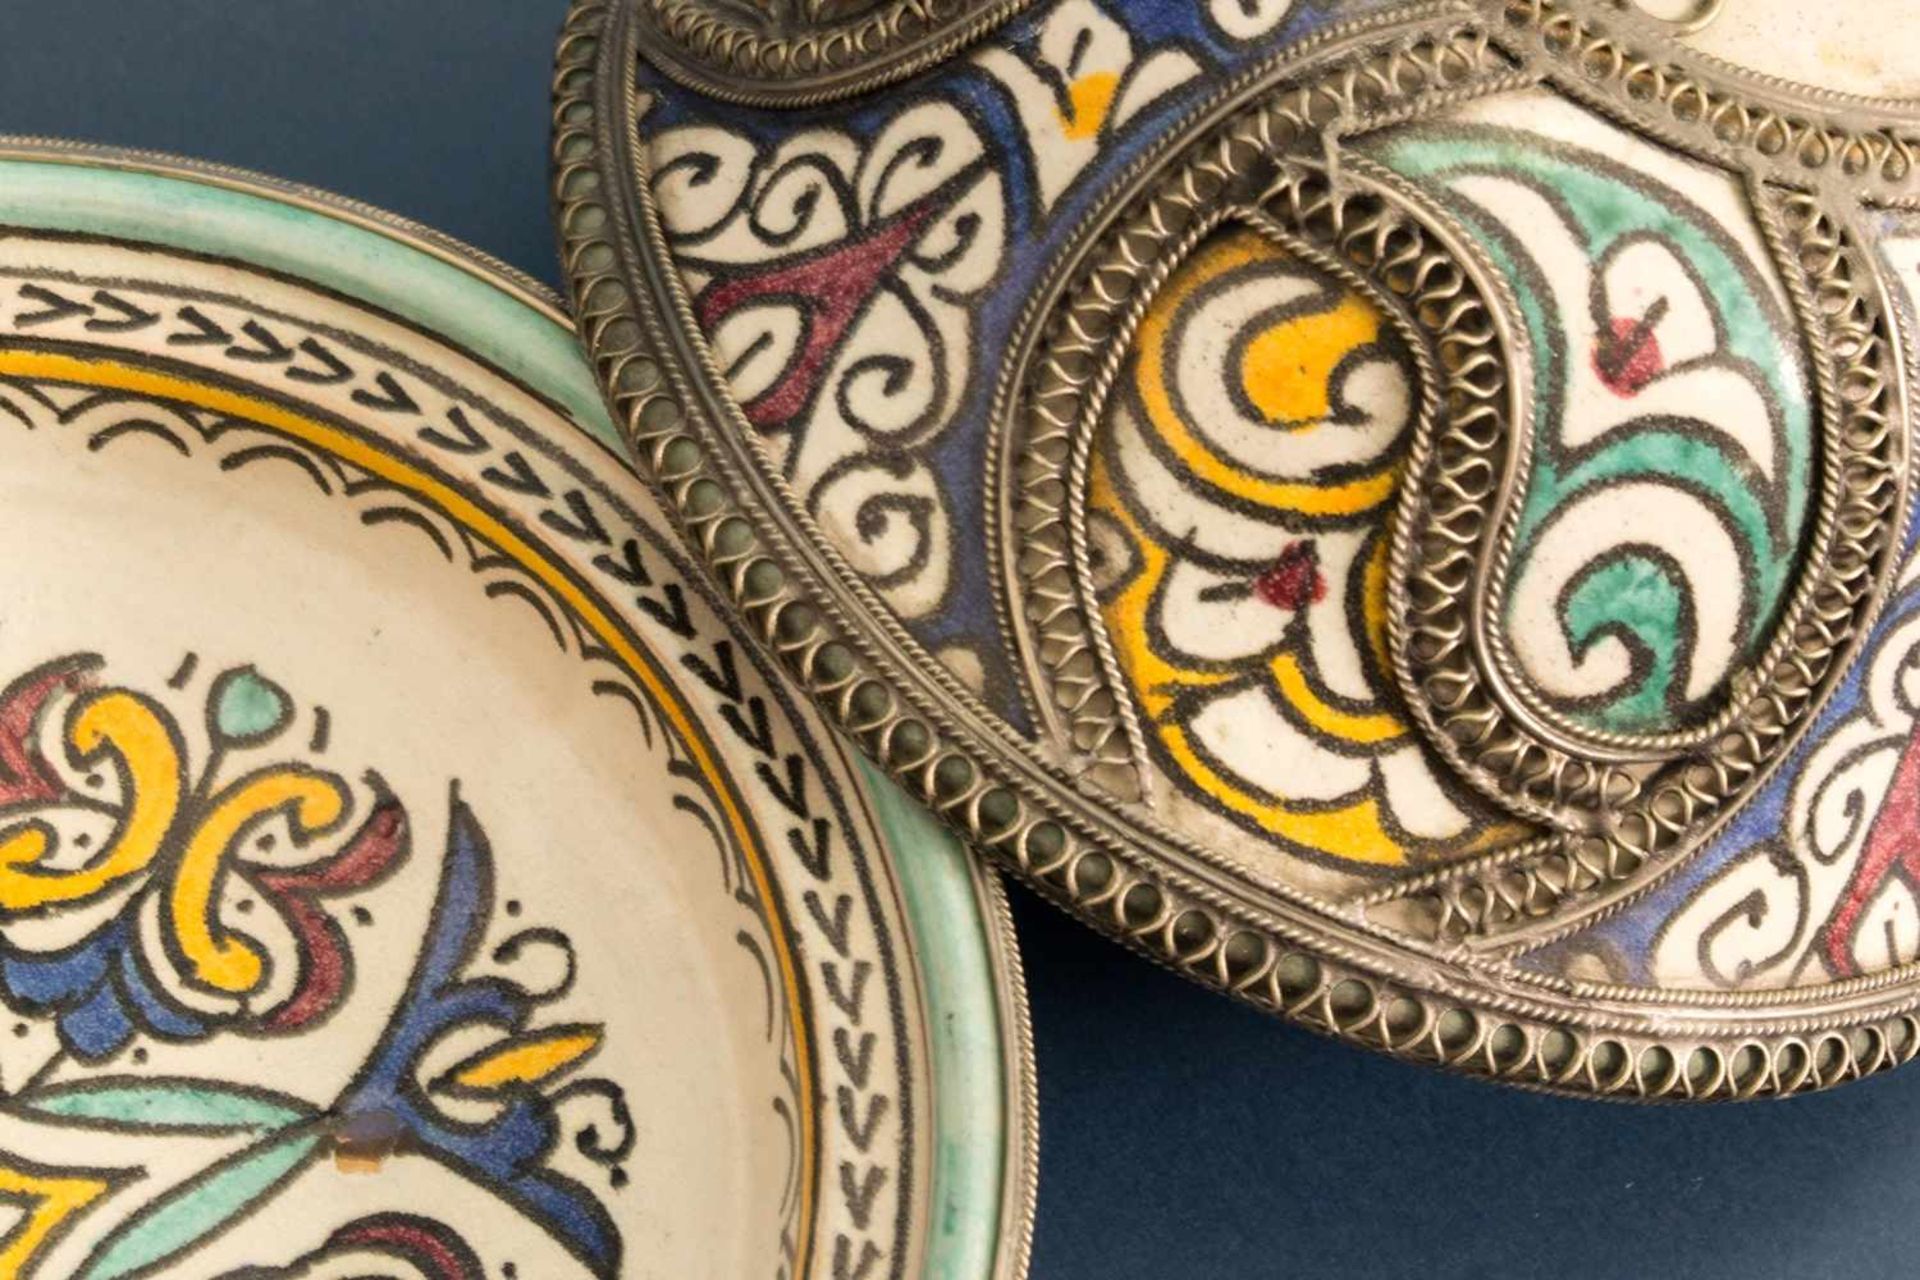 Orientalisches Deckelgefäß, polychrom staffierte, glasierte Keramik mit aufwändig gestaltetem, - Bild 15 aus 16